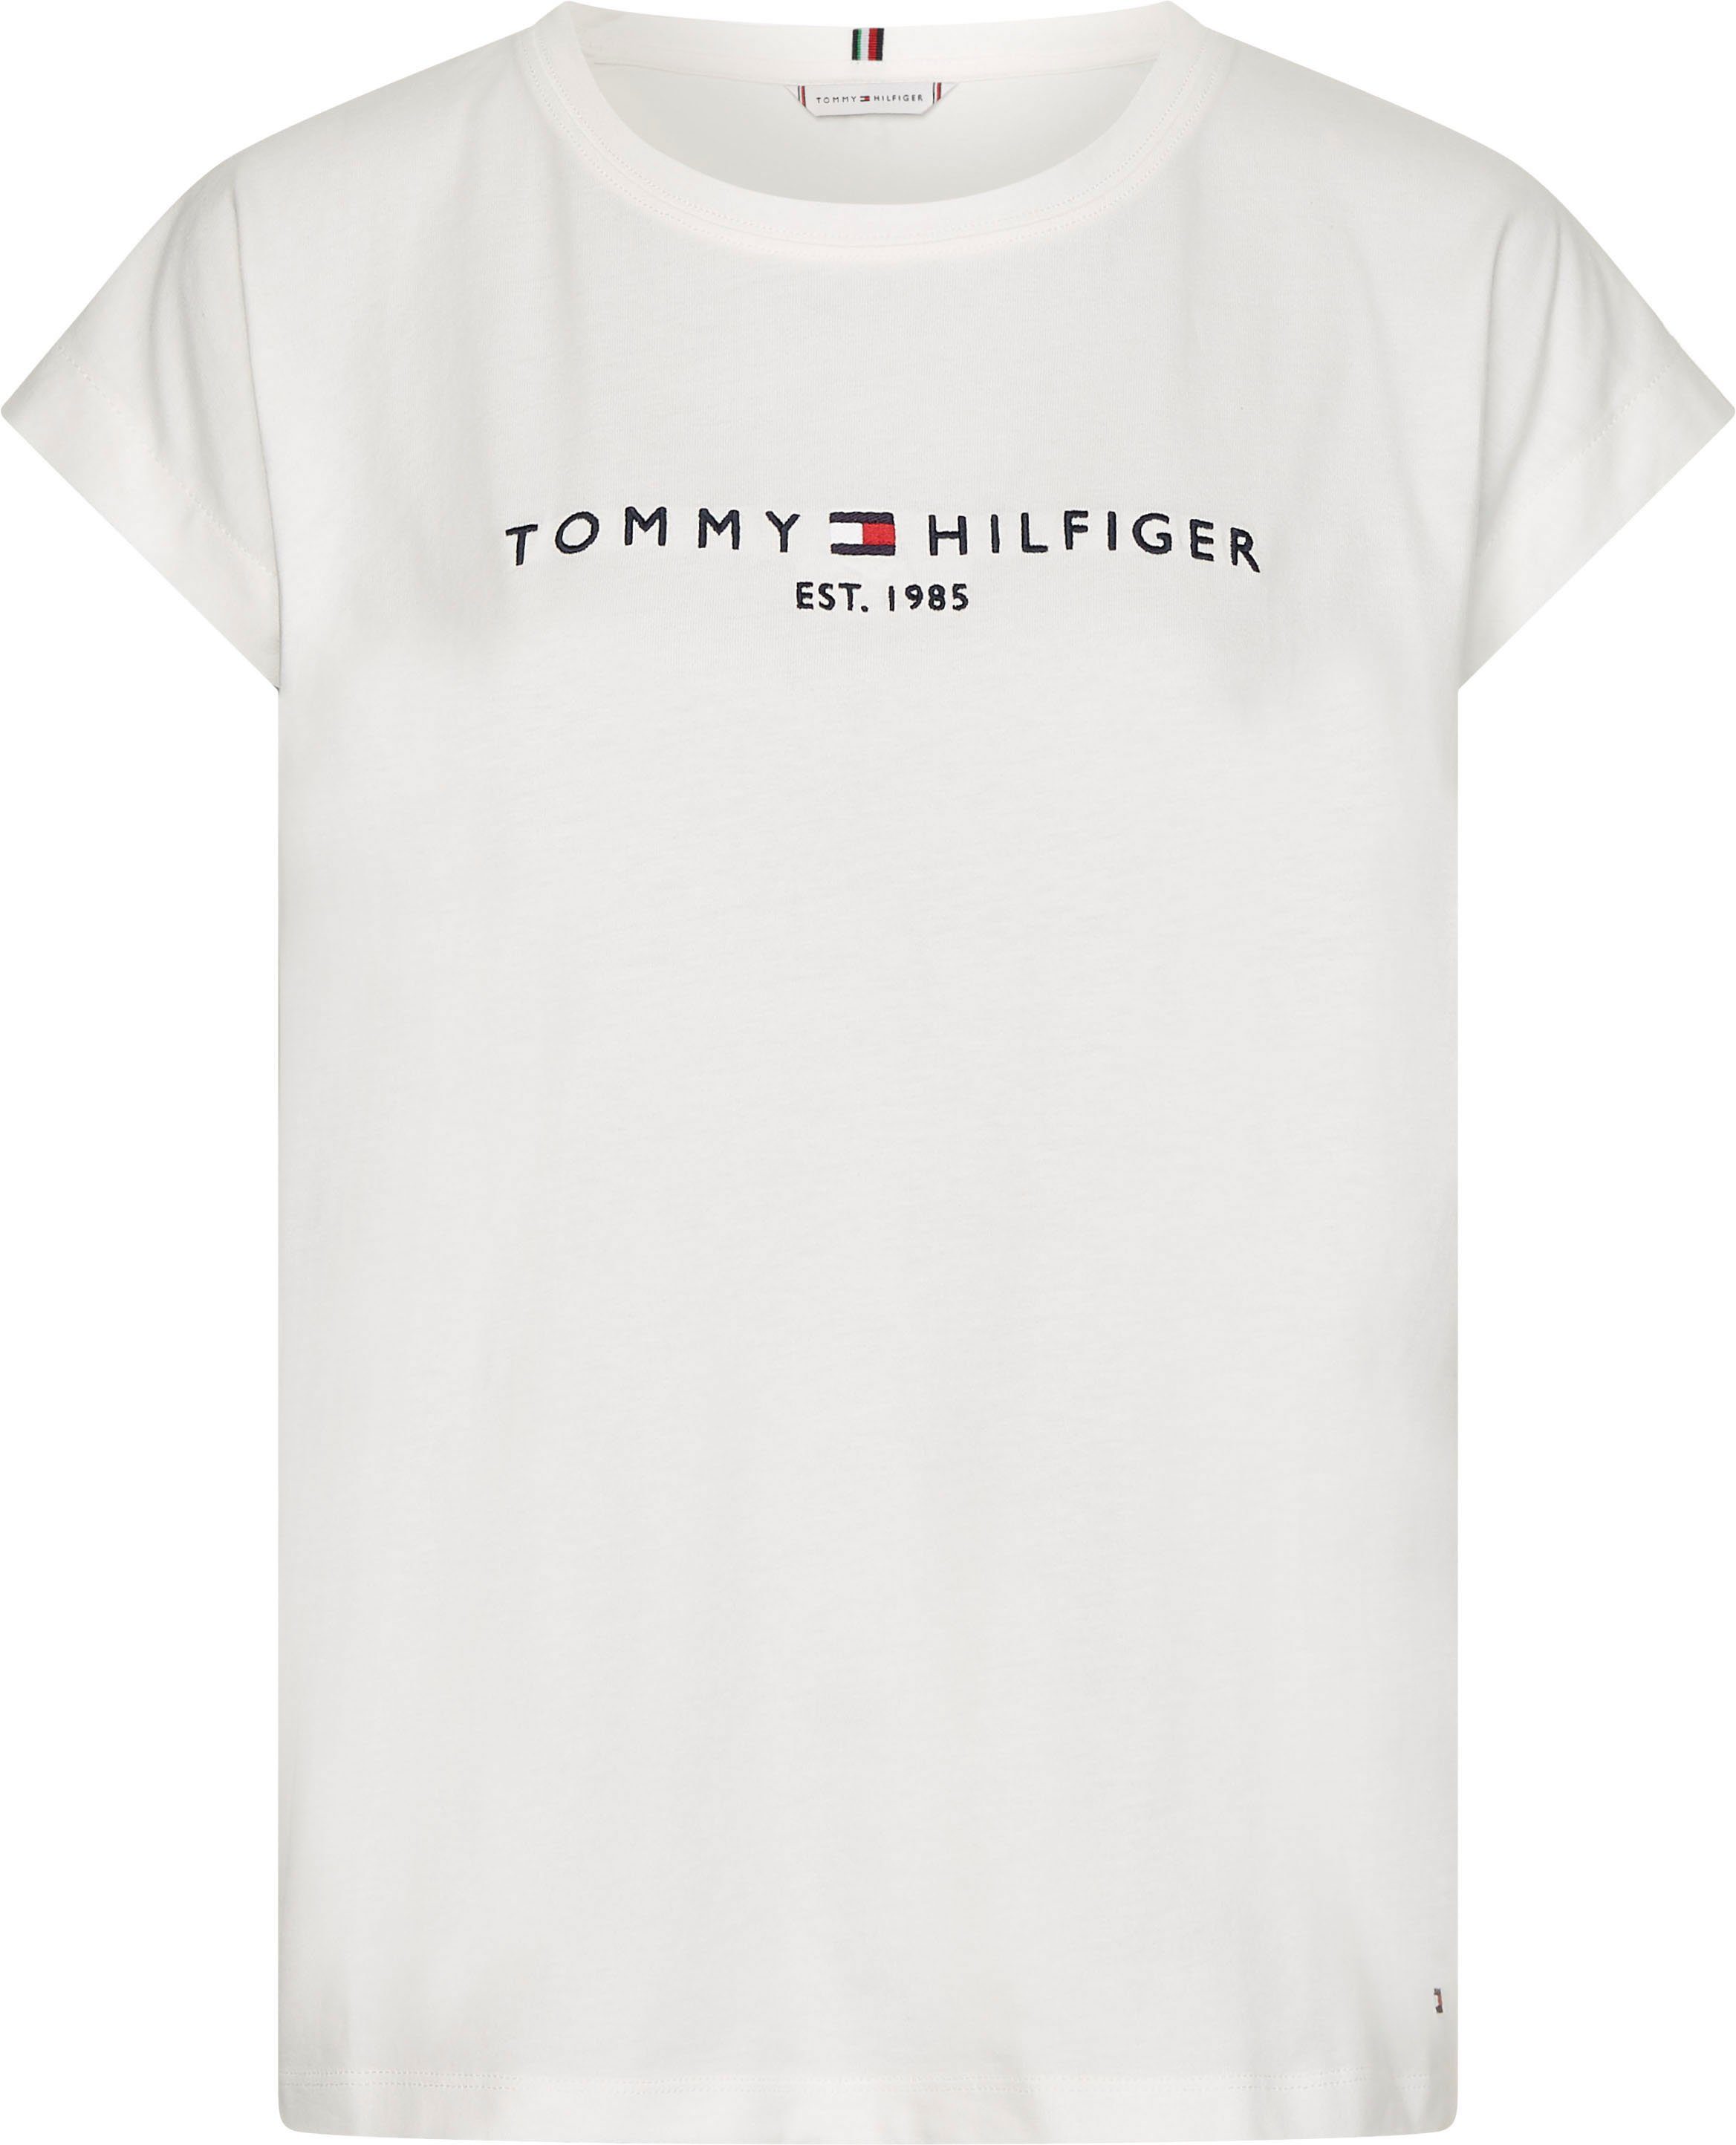 Tommy Hilfiger Shirts online kaufen | OTTO